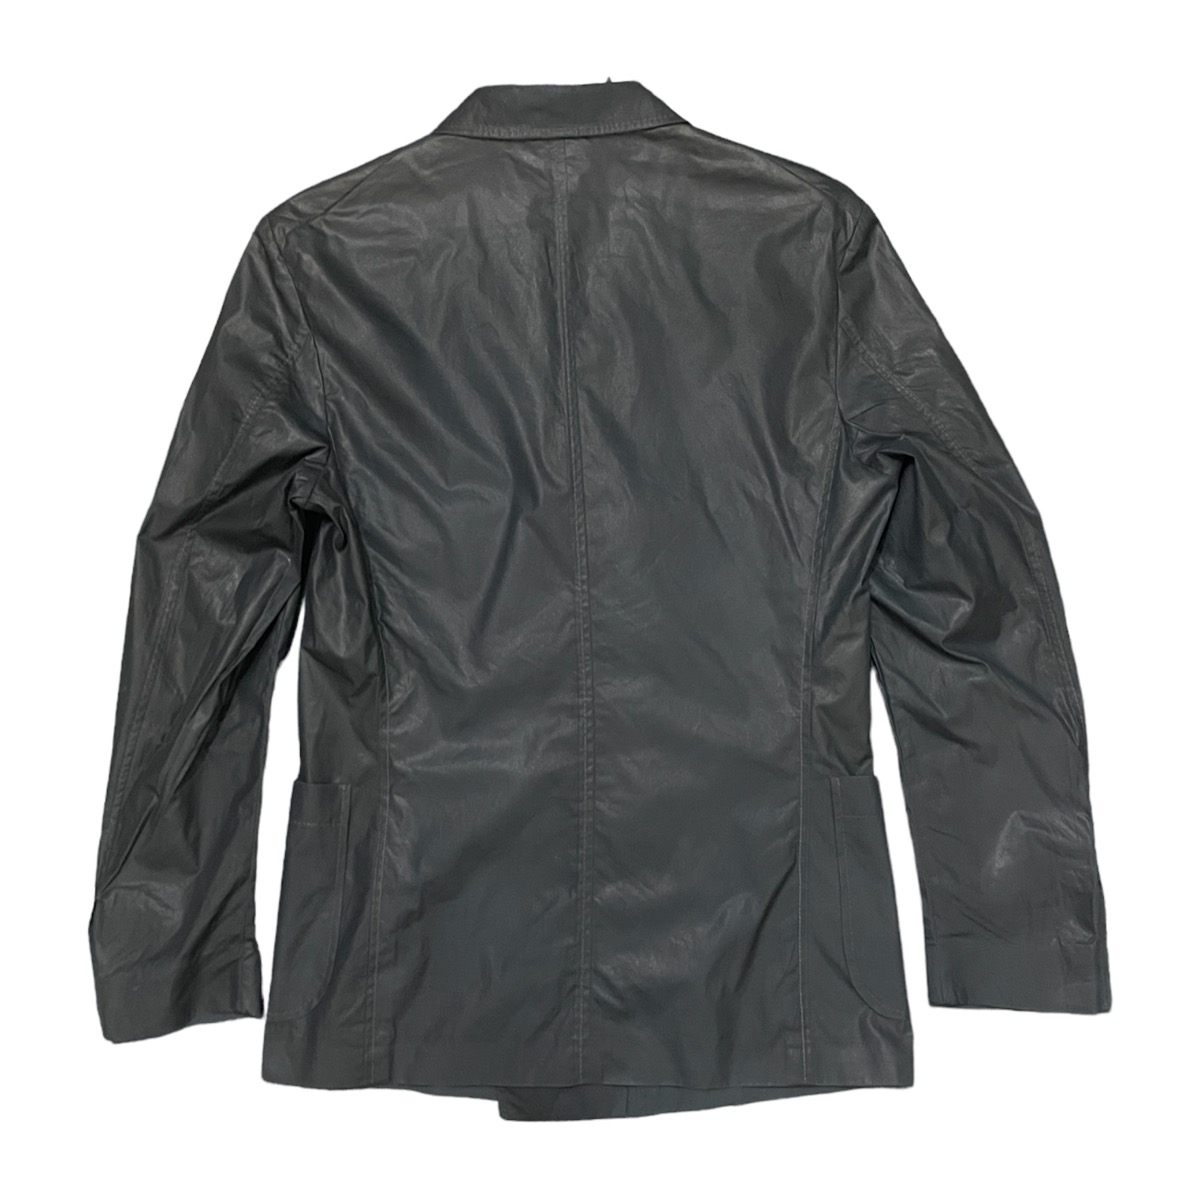 Z Zegna button blazer jacket rayon jacket - 2